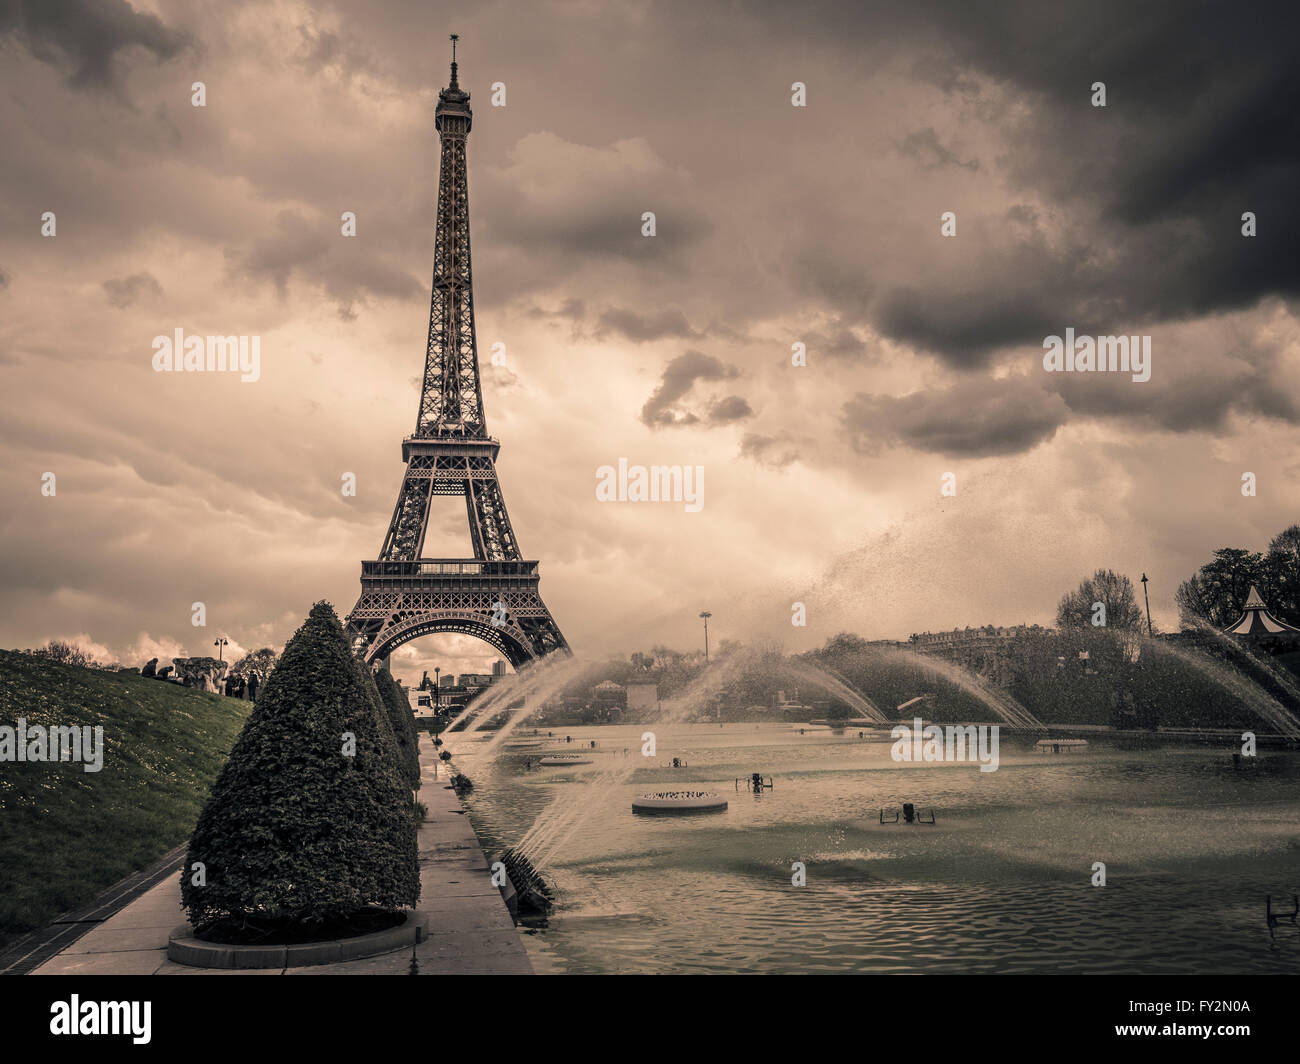 La Tour Eiffel et des fontaines dans les jardins du Trocadéro, Paris, France. Banque D'Images